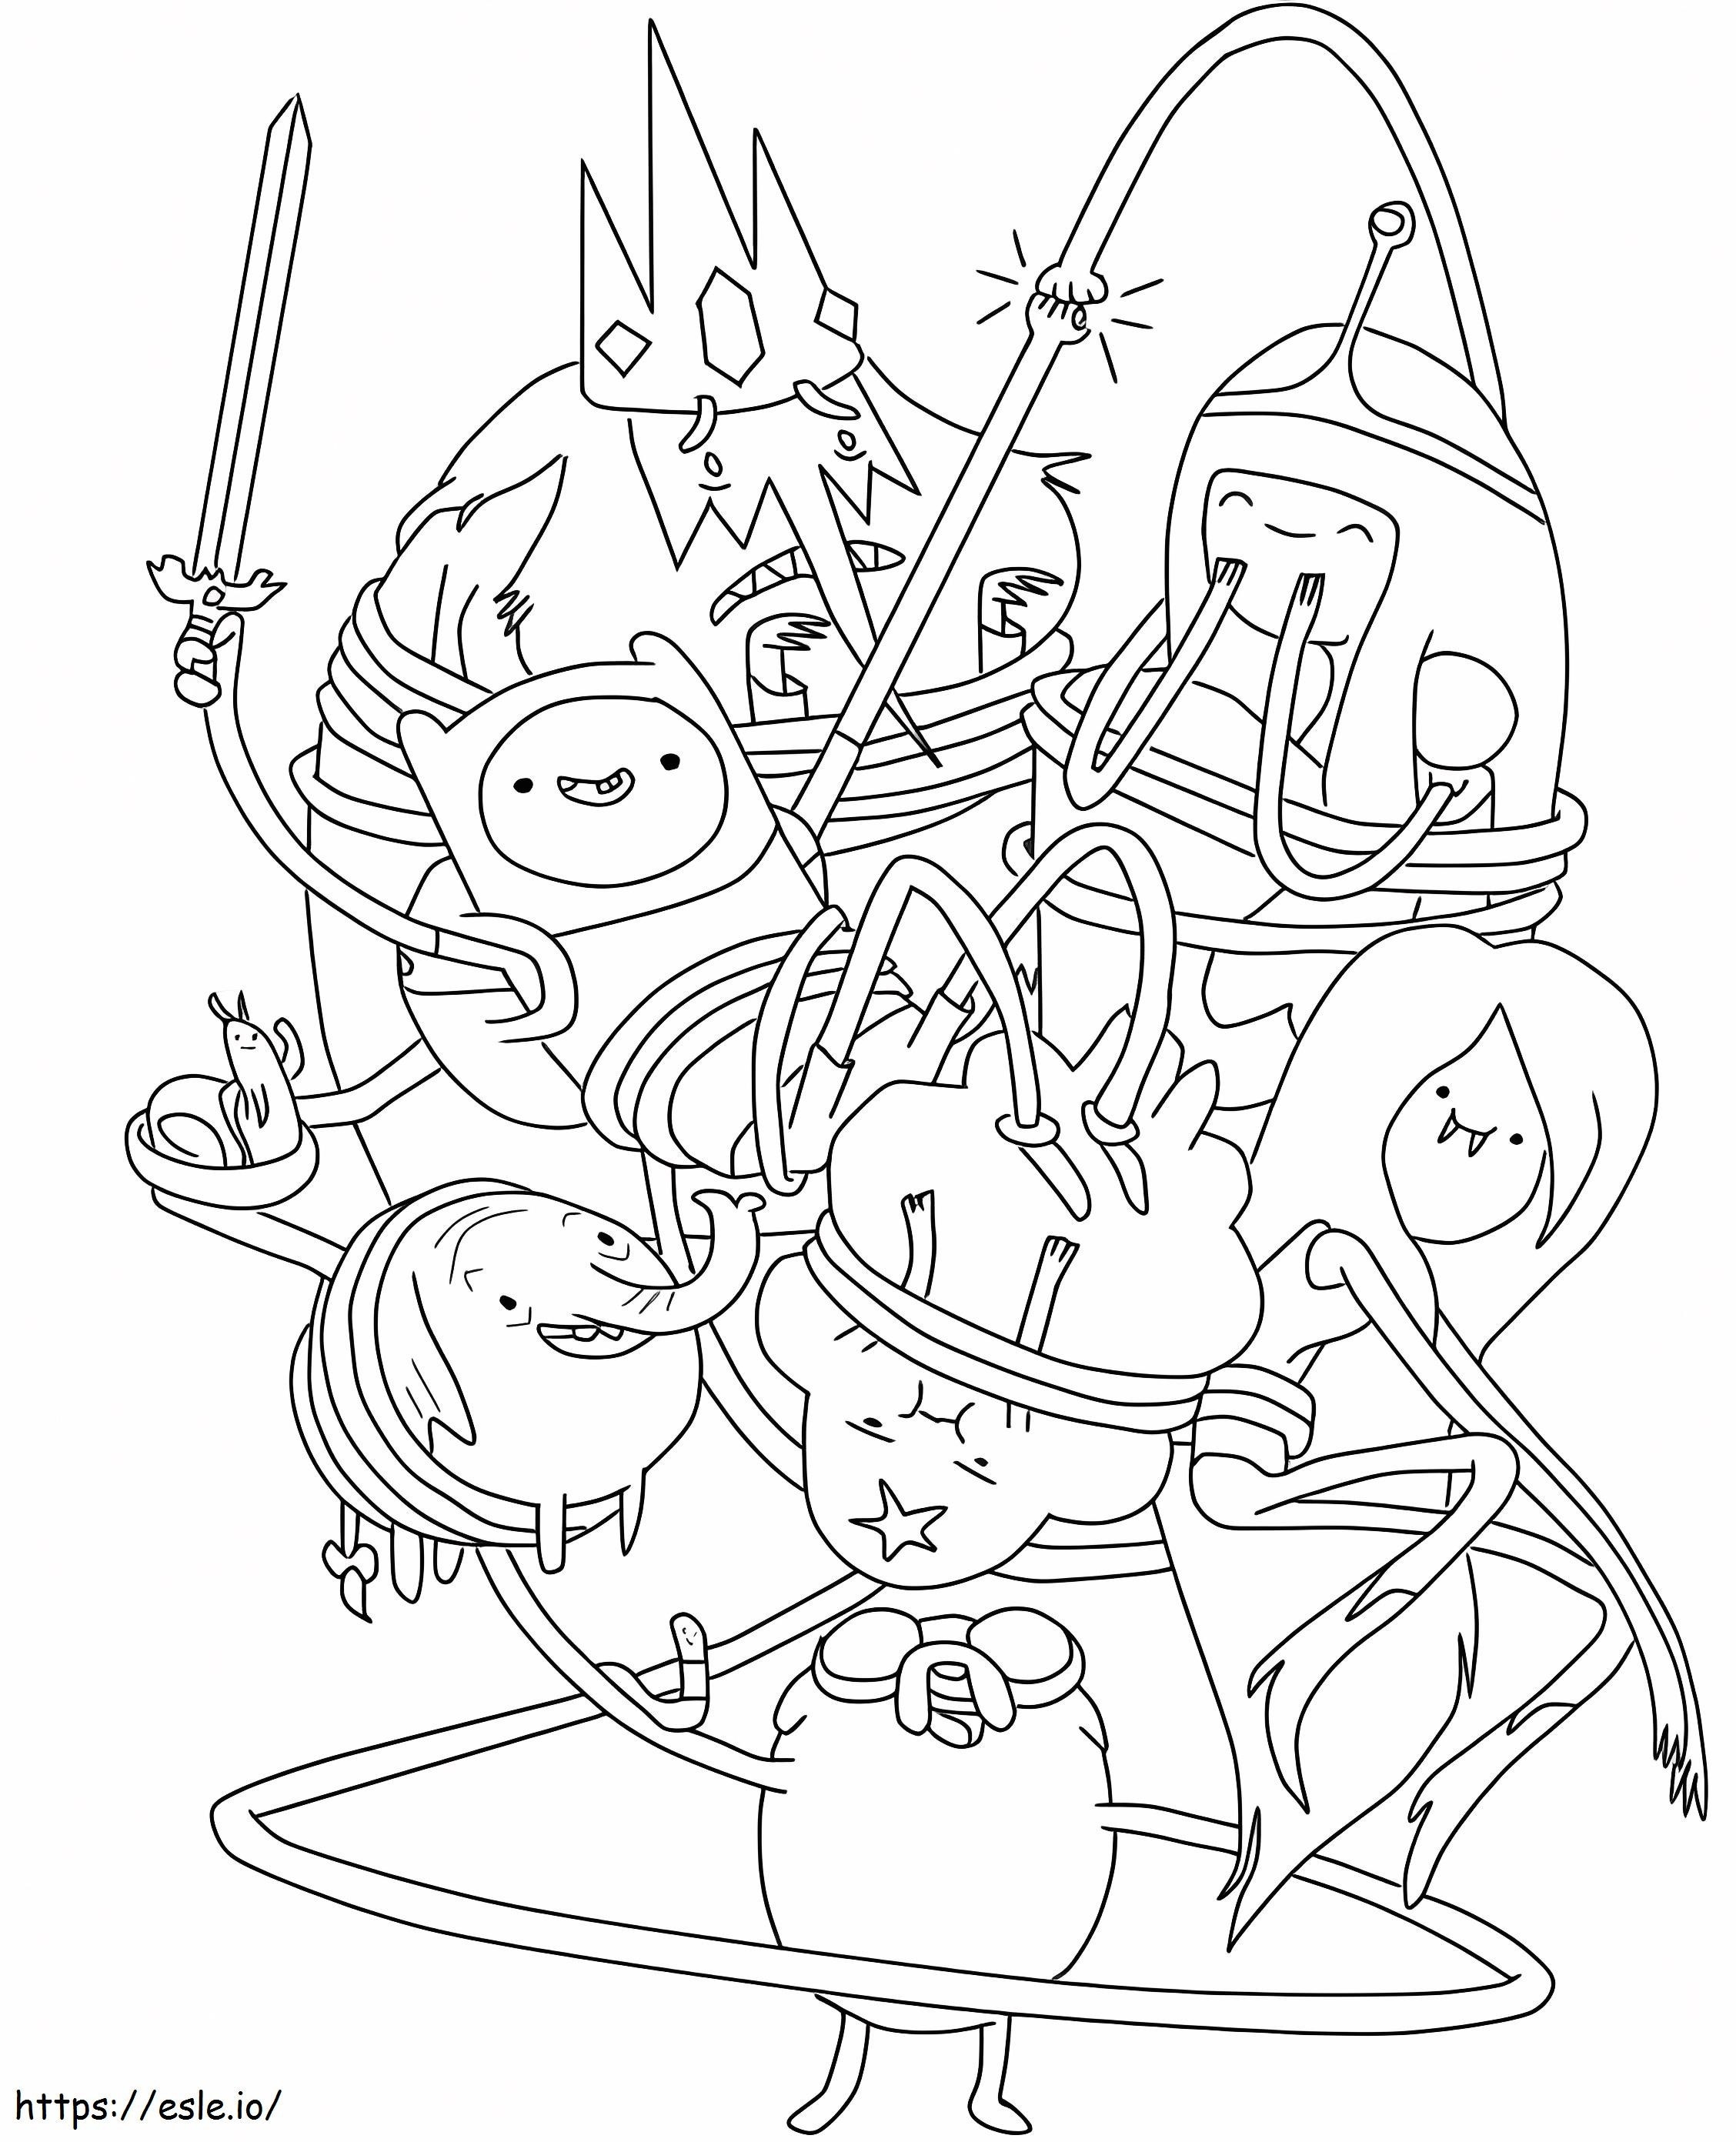 Personaggi normali di Adventure Time da colorare